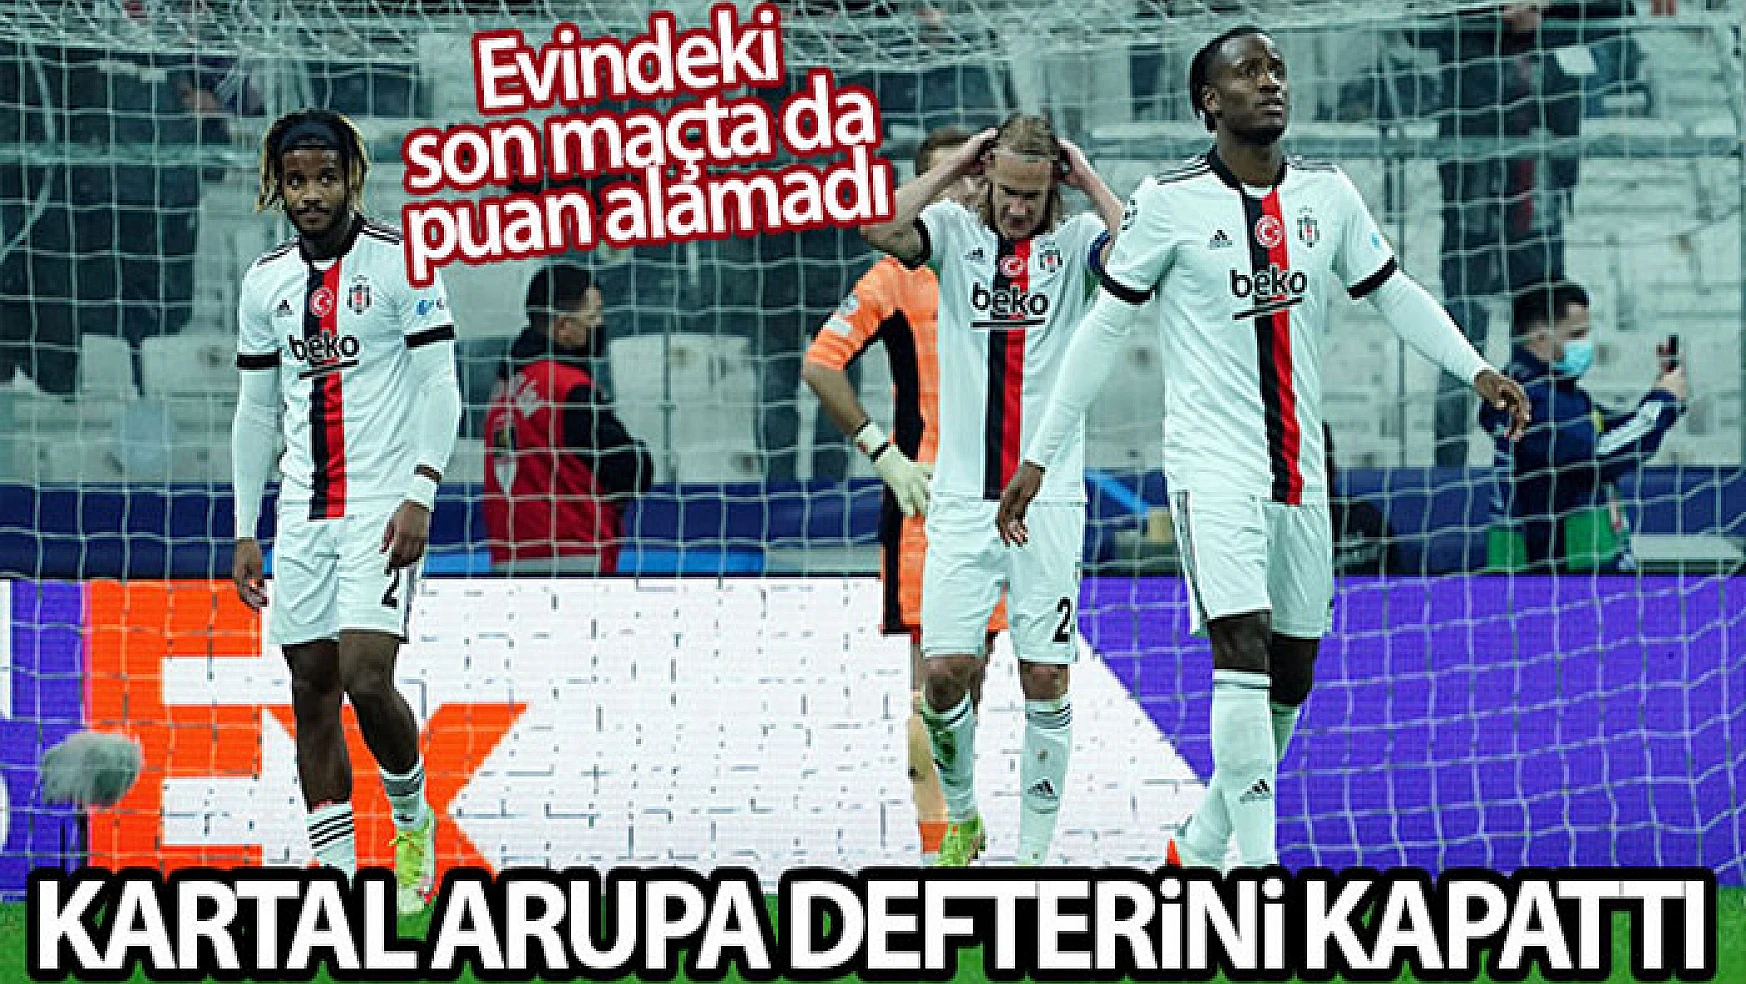 Beşiktaş evindeki son maçta da puan alamadı